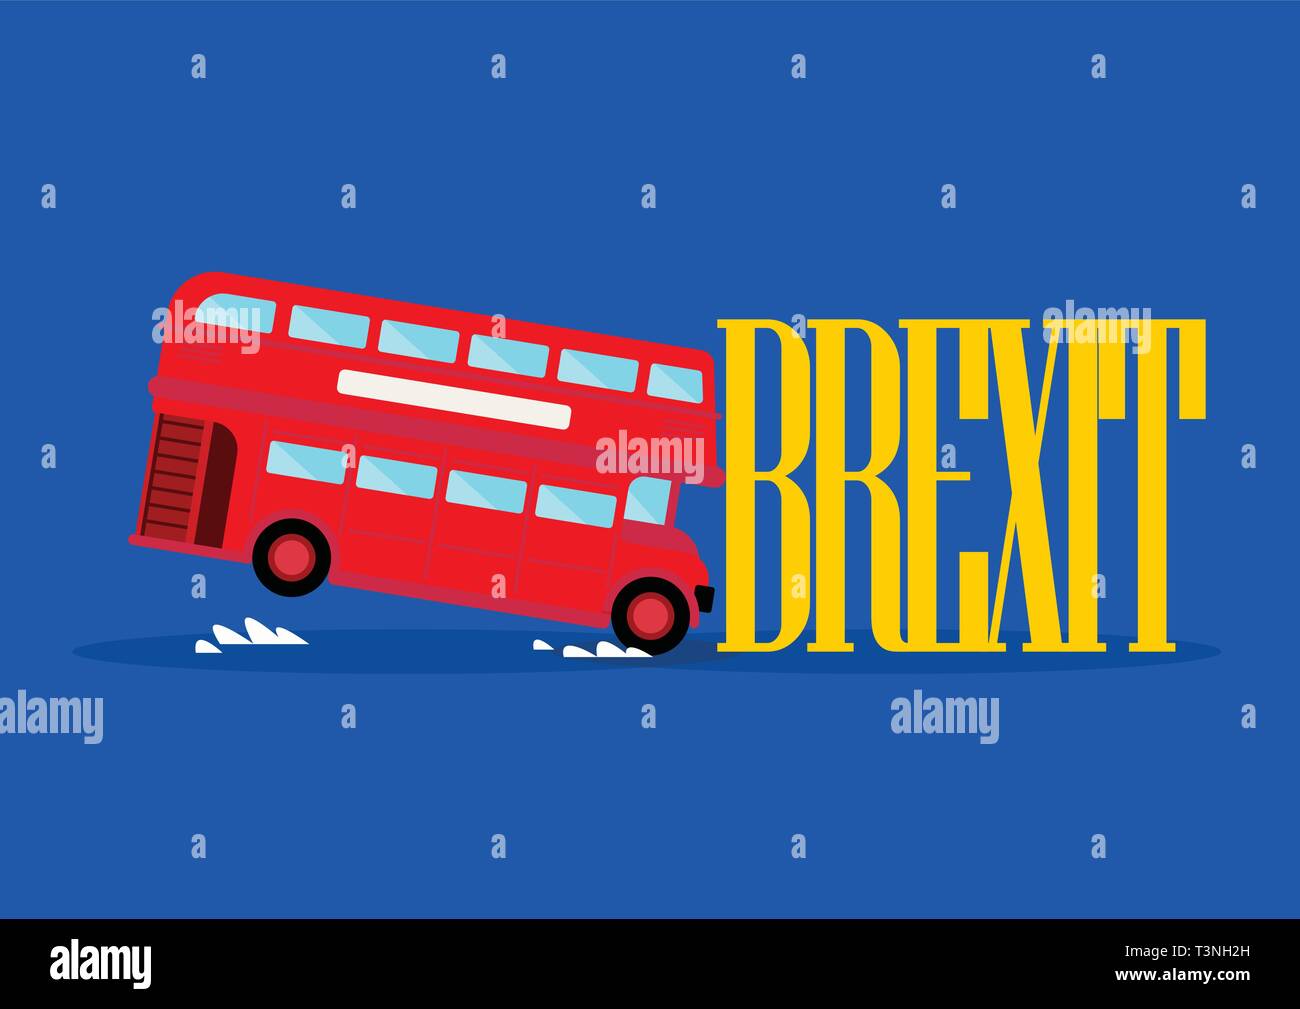 El London City bus brexit chocar con Word. Concepto Brexit Ilustración del Vector